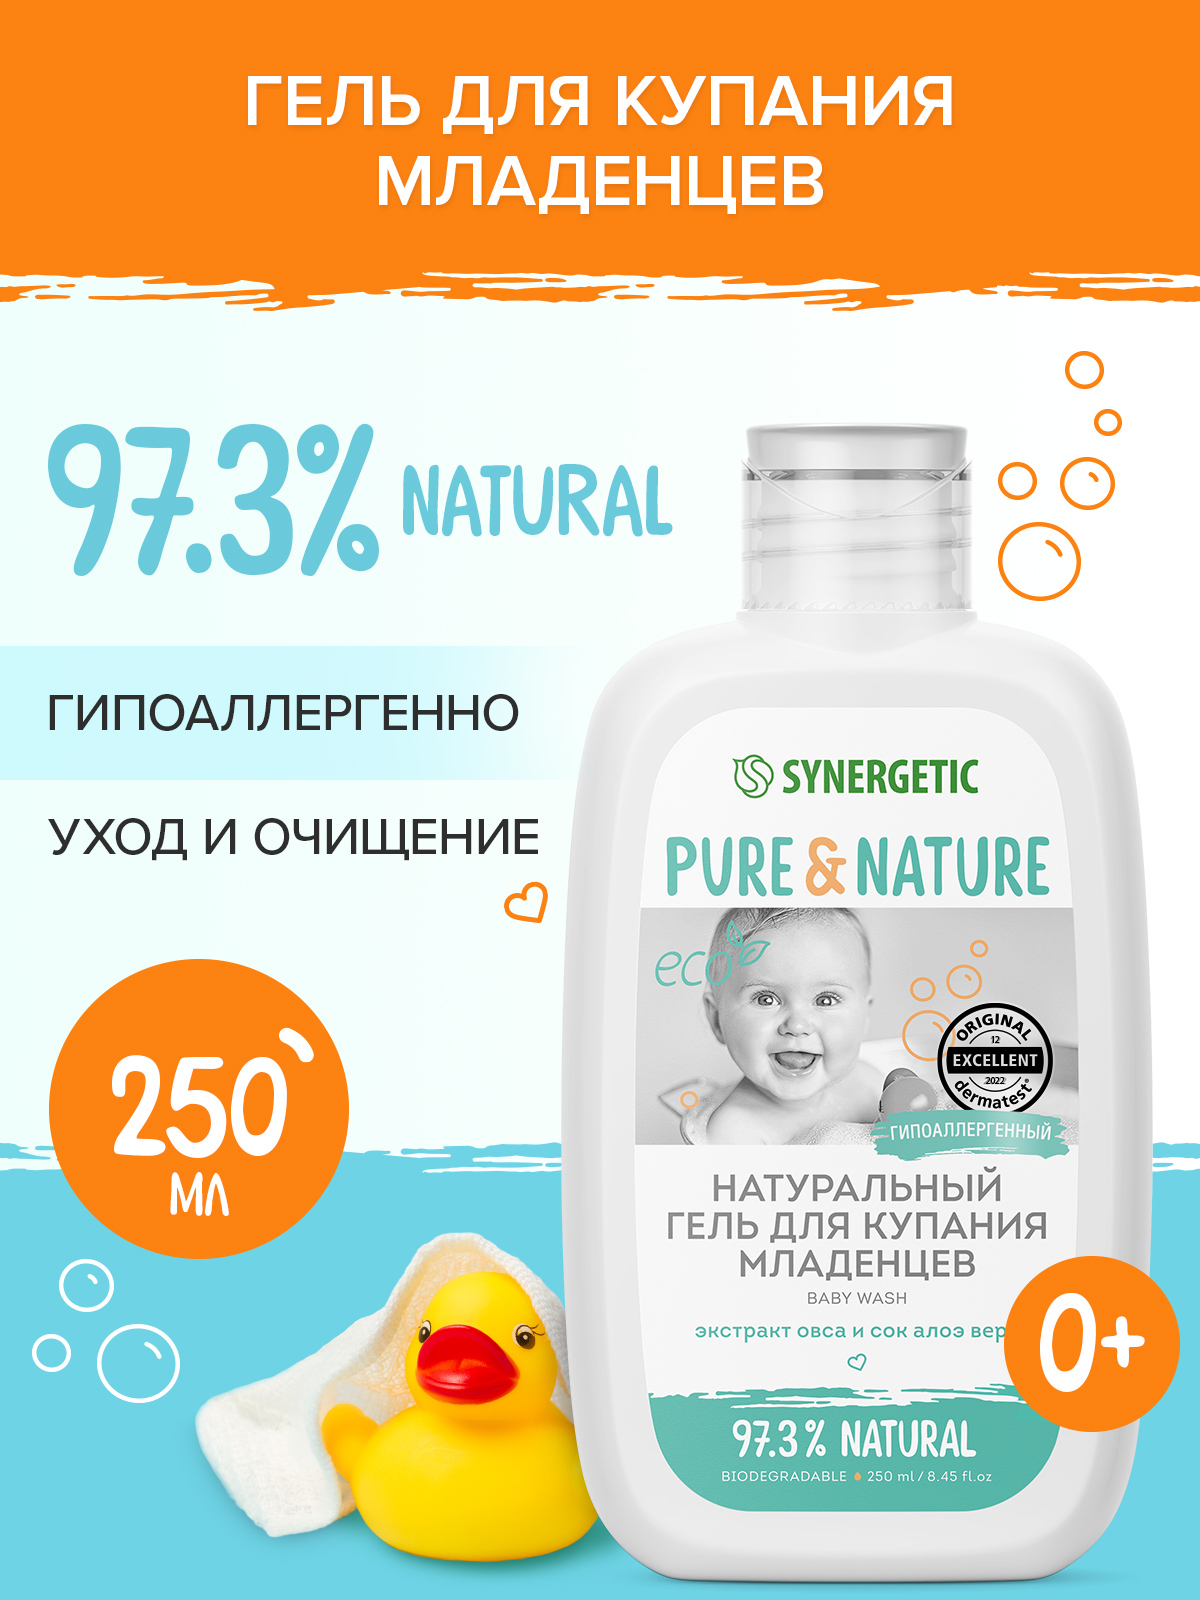 Натуральный гипоаллергенный гель для купания младенцев 0+ SYNERGETIC, 250мл